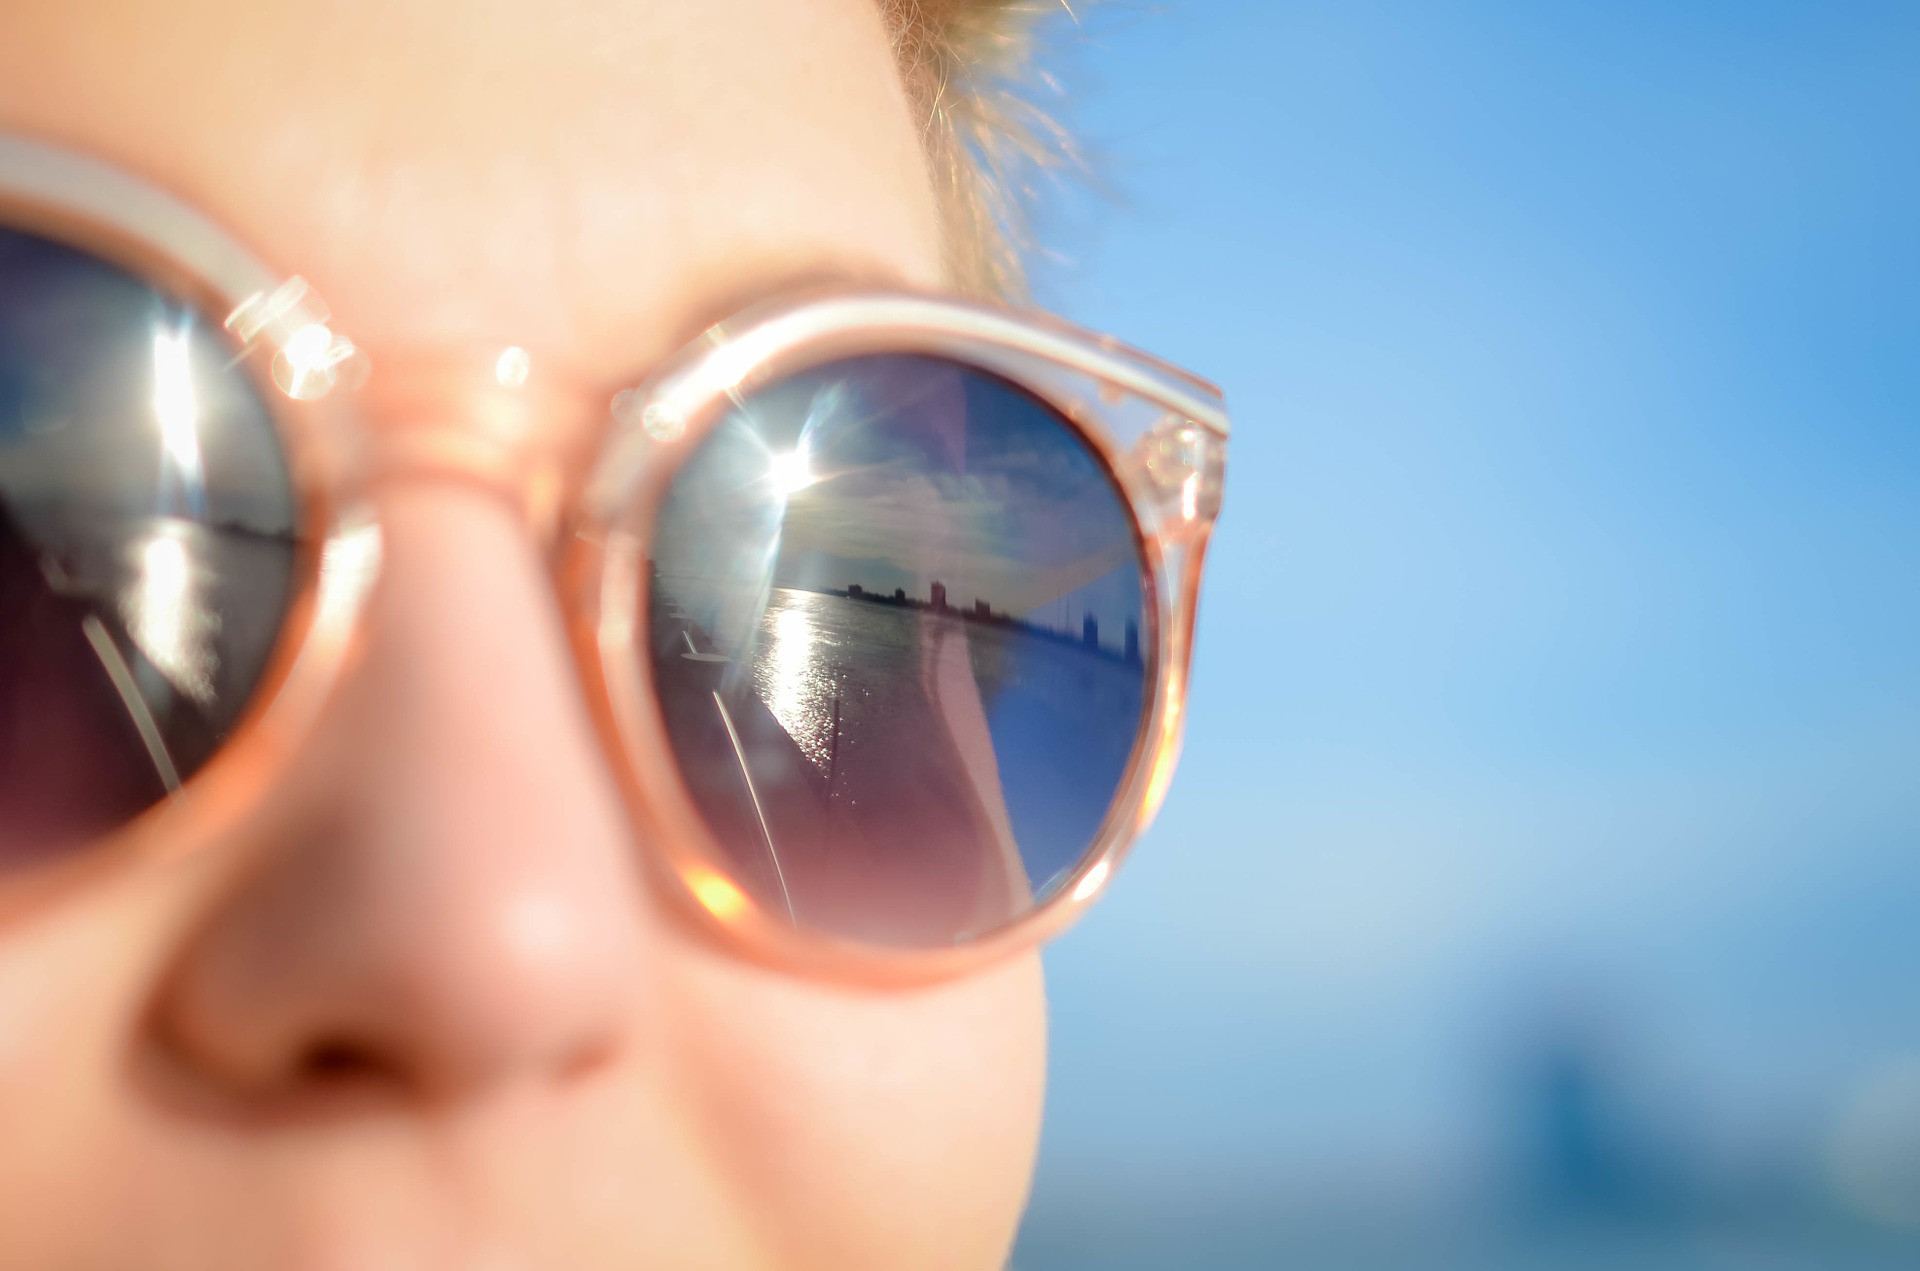 O rizikách spálenia pokožky sa toho popísalo už mnoho, ale vedeli ste, že slnko môže ublížiť aj očným buľvám? Nazýva sa to fotokeratitída a môže nastať už po niekoľkých hodinách po vystavení silnému slnku. 

Ak pravidelne nenosíte slnečné okuliare, vystavujete sa aj riziku sivého zákalu, makulárnej degenerácie a výrastkov na oku. Nedávny prieskum zistil, že iba 31 percent ľudí nosí slnečné okuliare s ochranou proti UV žiareniu vždy, keď idú von, a iba 44 percent ich nosí na pláži. Tento typ poškodenia je však „kumulatívny a nezvratný“. Takže dôsledne noste slnečné okuliare s ochranou proti UVA a UVB.
